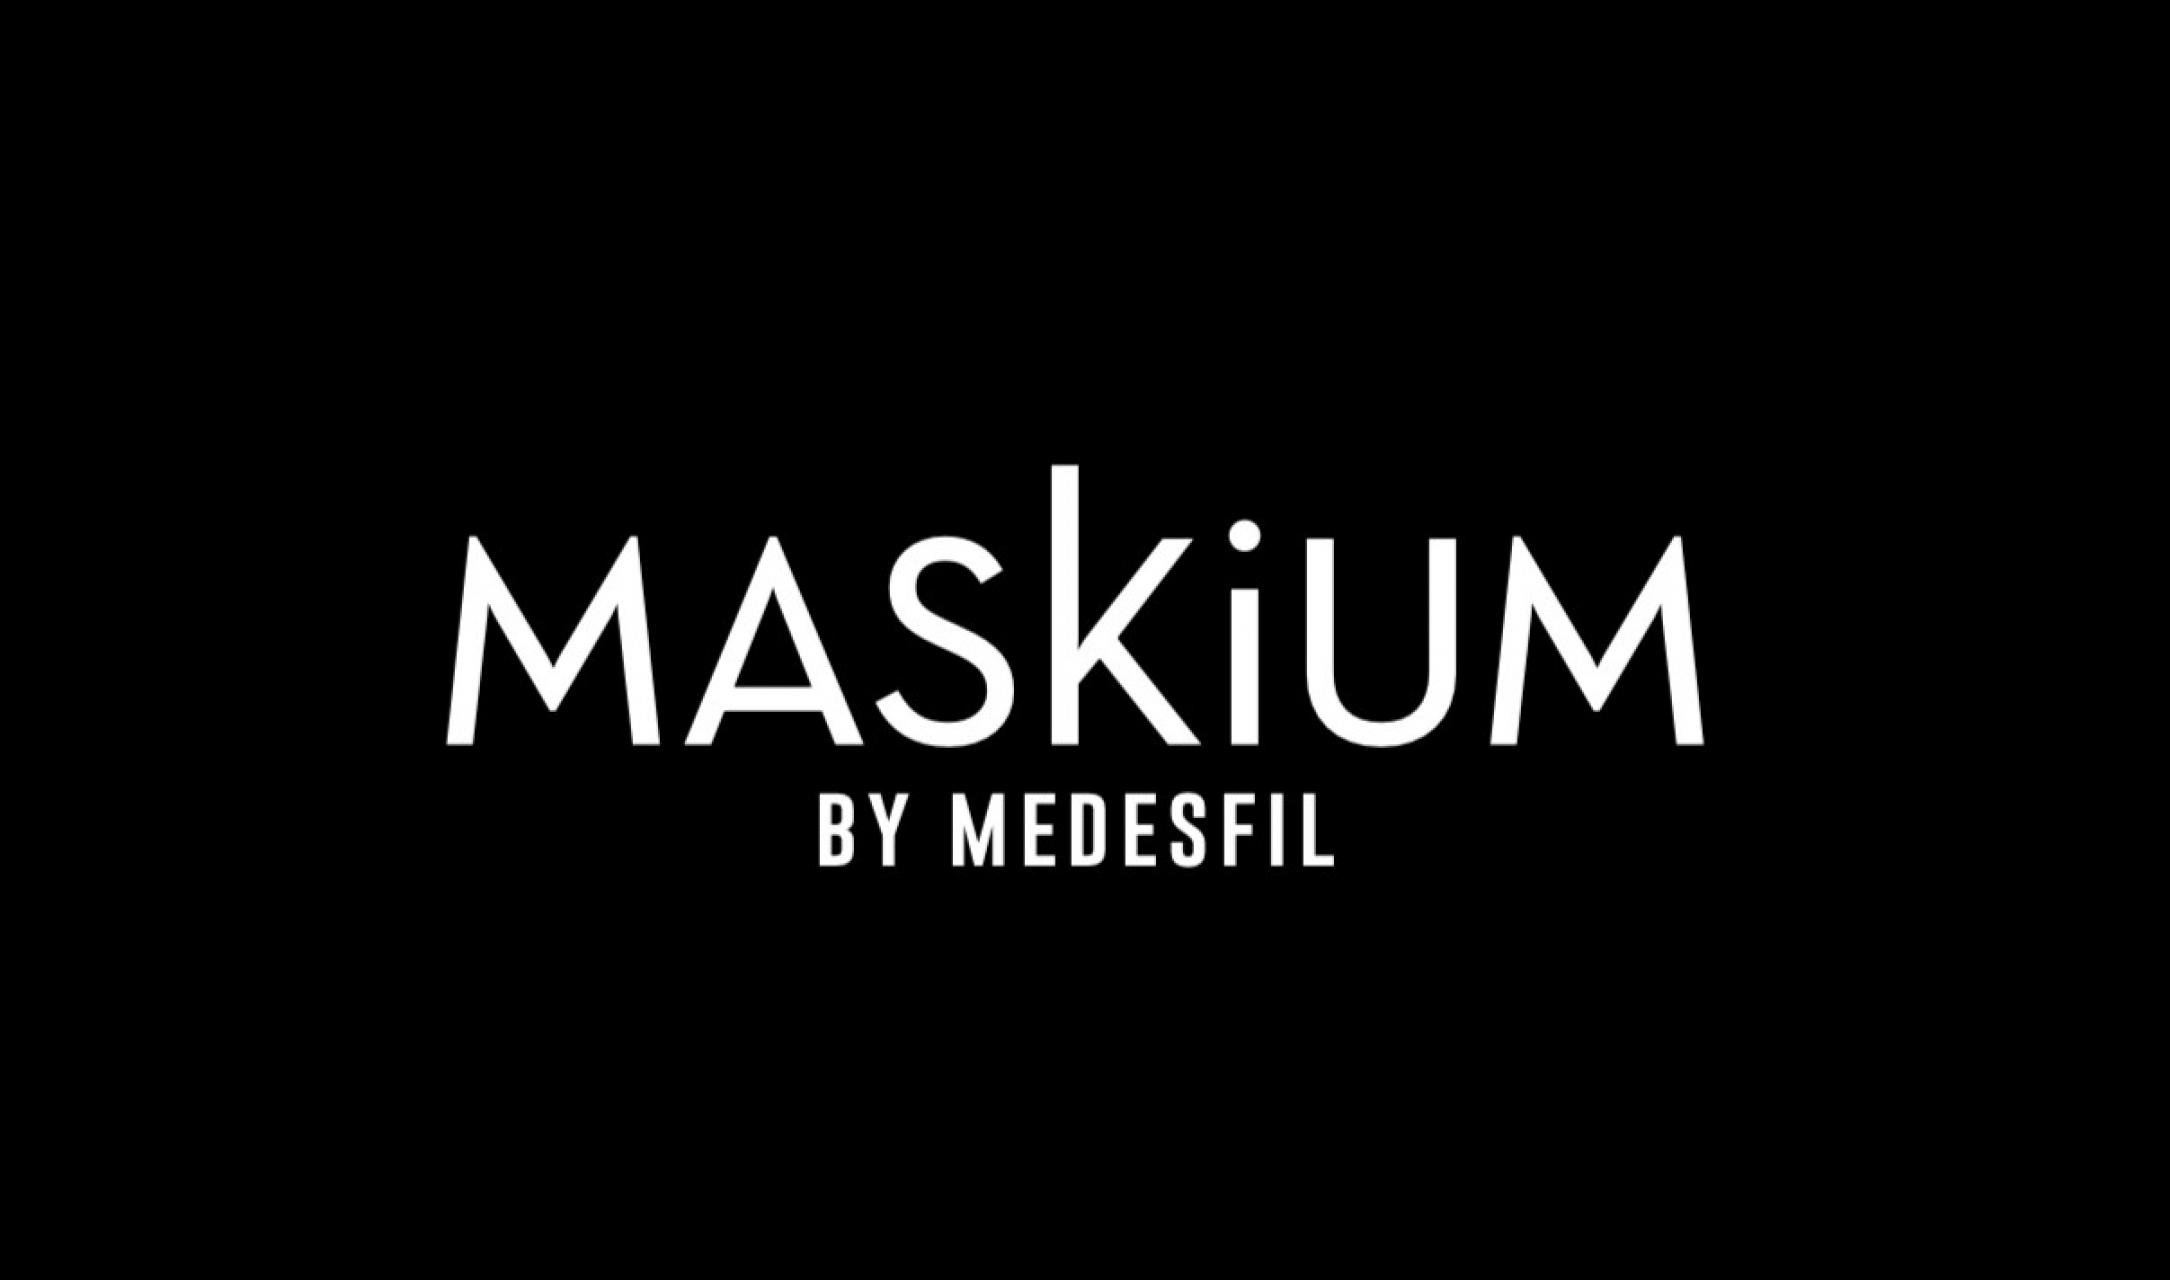 MasKium